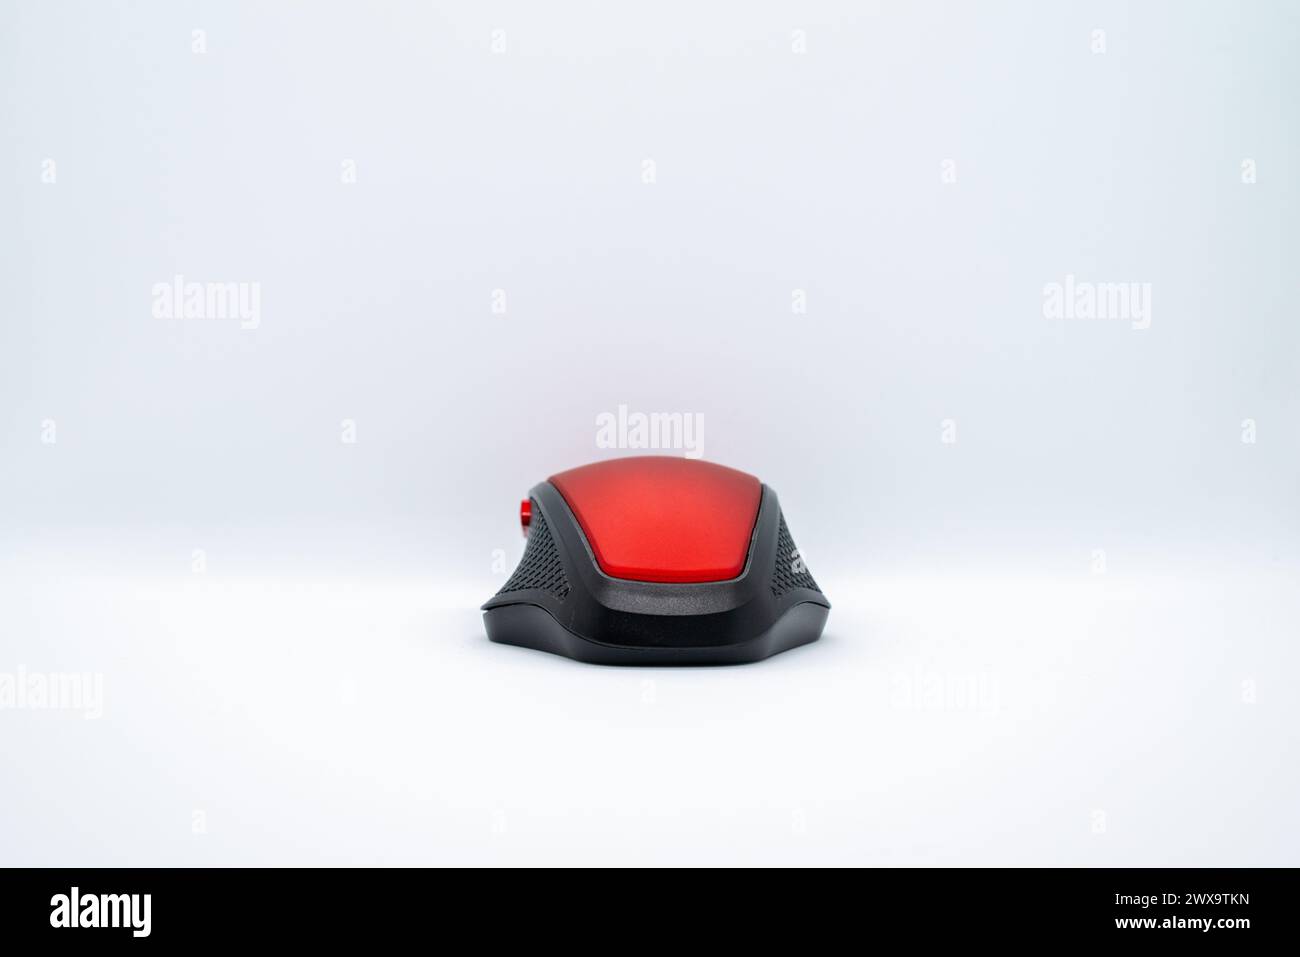 Eine elegante rote Maus auf einem sauberen weißen Hintergrund, die Stil mit Präzision für eine nahtlose Computernavigation kombiniert. Stockfoto